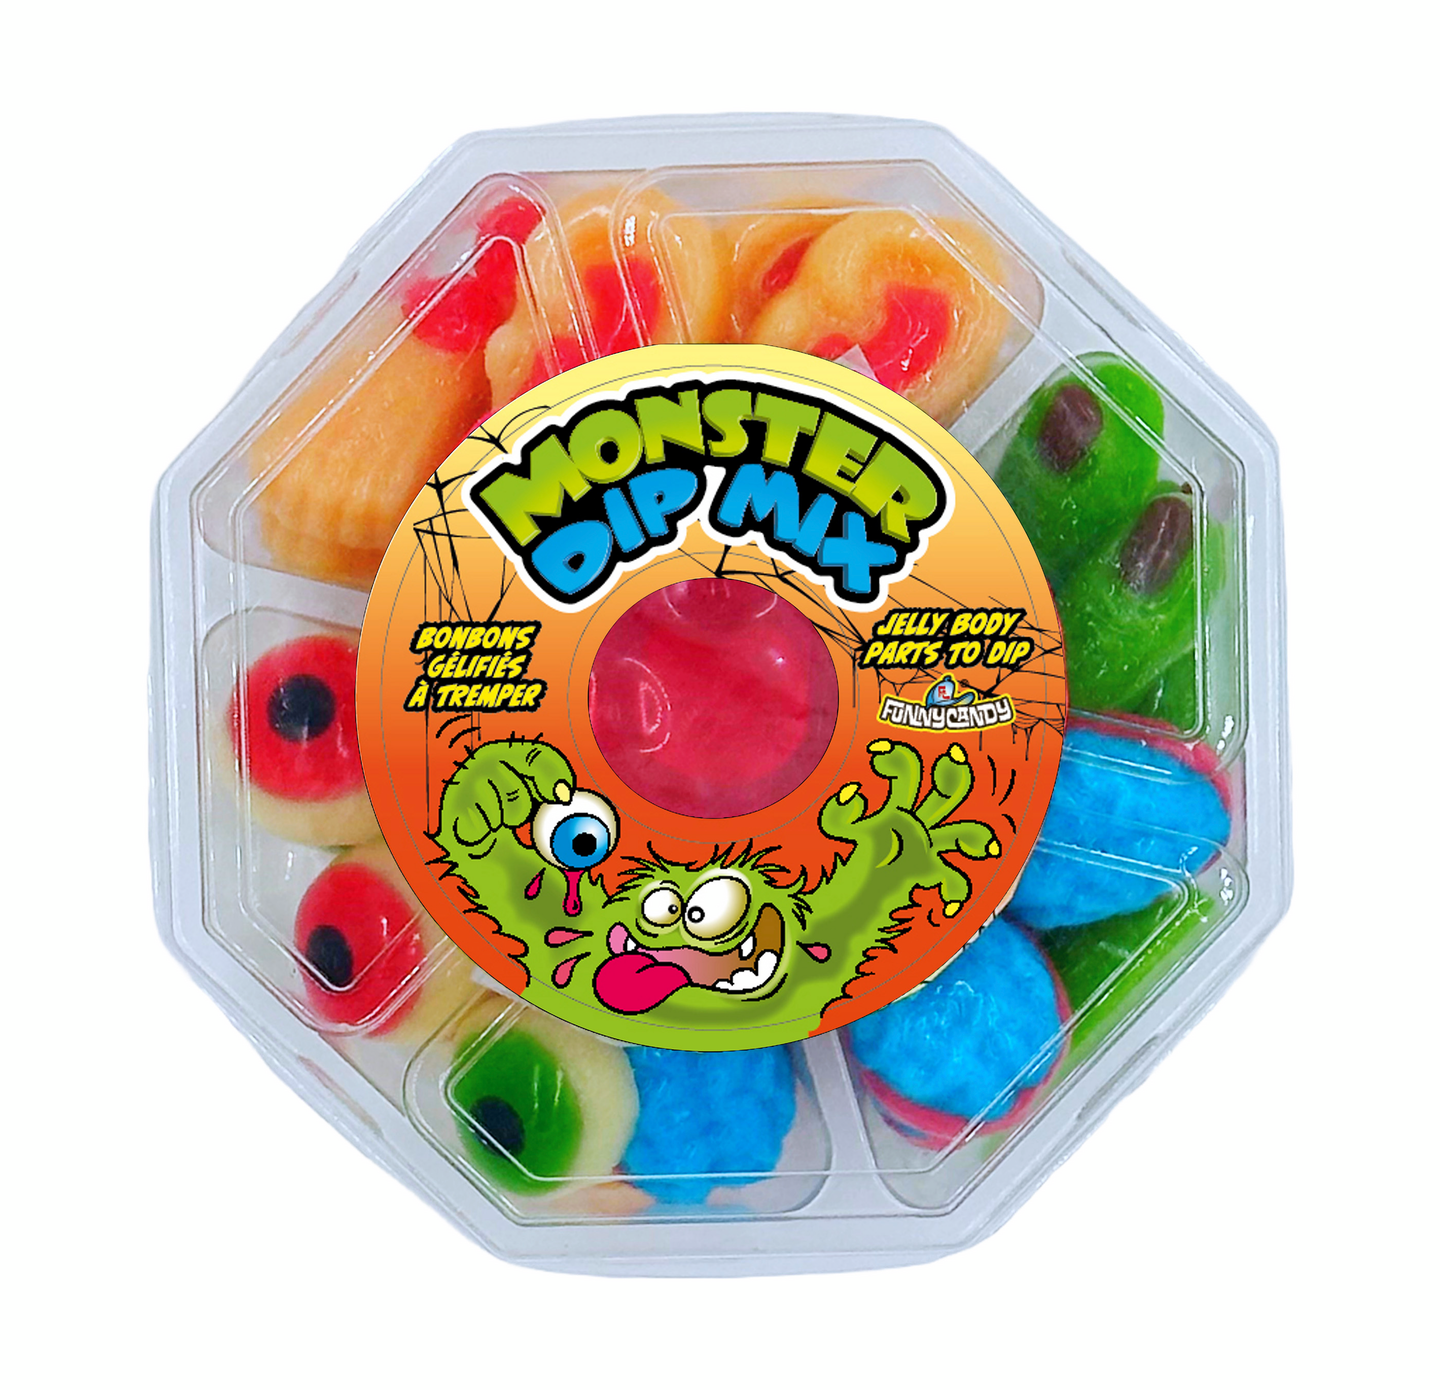 Funny Candy Monster Dip Mix viinikumi nestemäisellä karkilla 240g